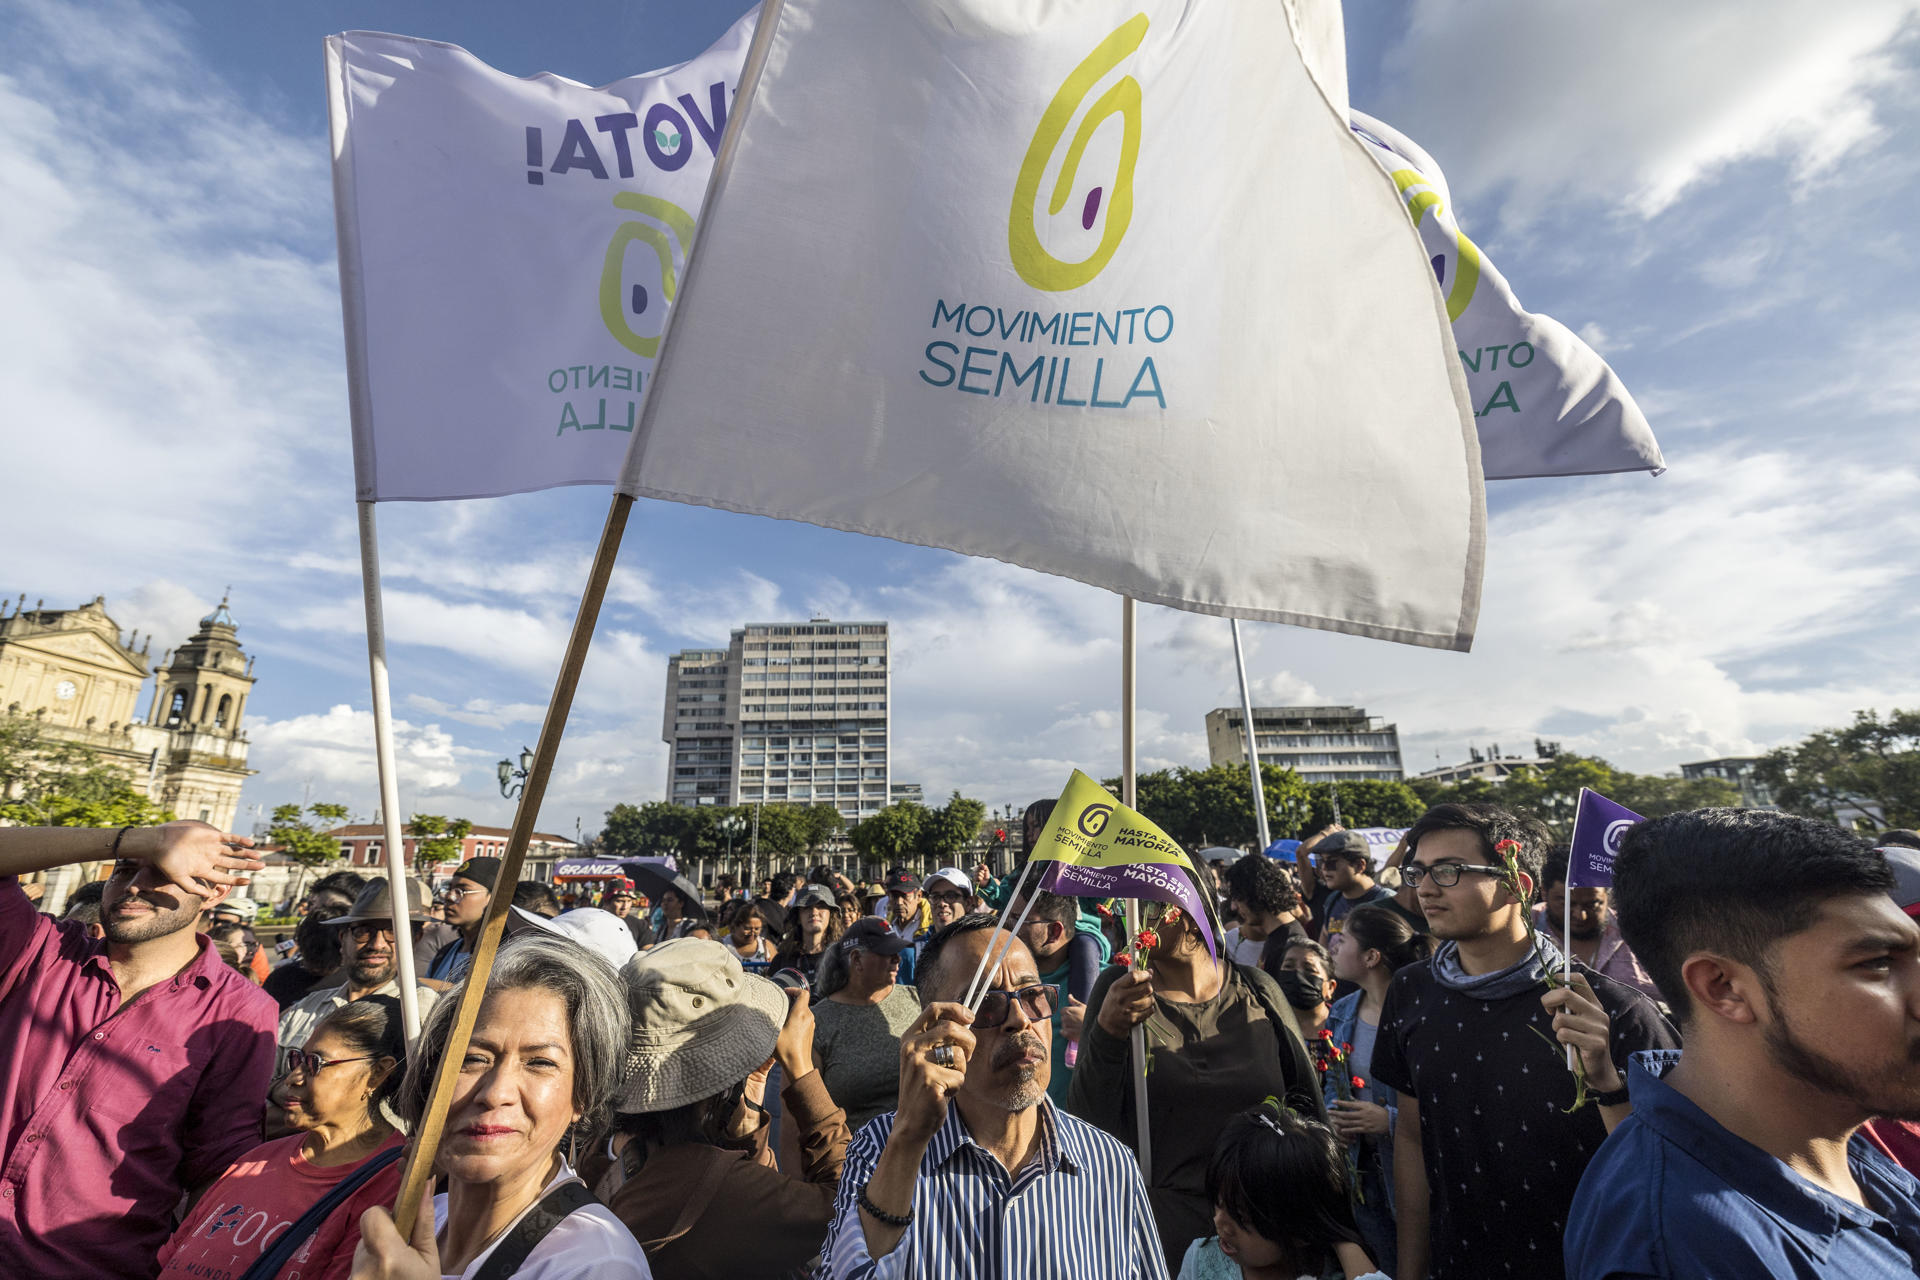 Supporters of Guatemalan President-elect Bernardo Arévalo of the Movimiento Semilla party in a file photograph. EFE/Esteban Biba